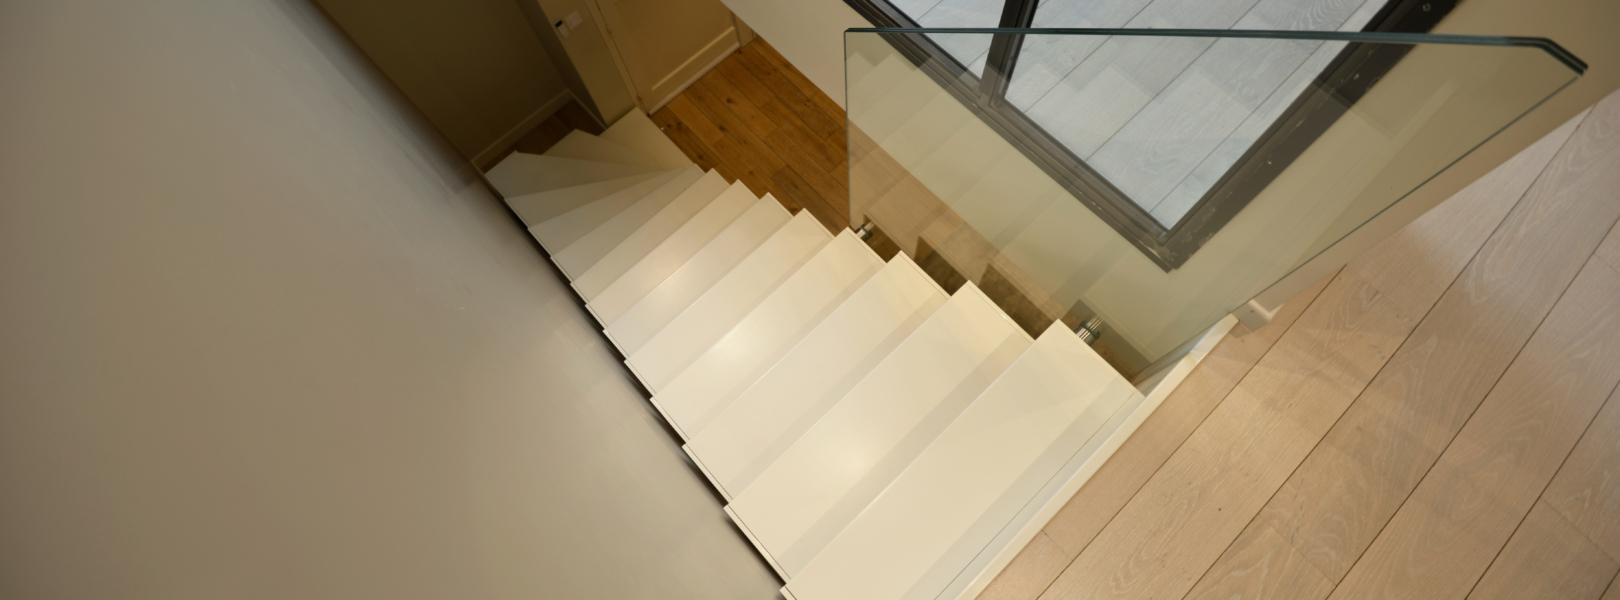 vue premier etage escalier design epure, escalier acier bois sur mesure chez un particulier